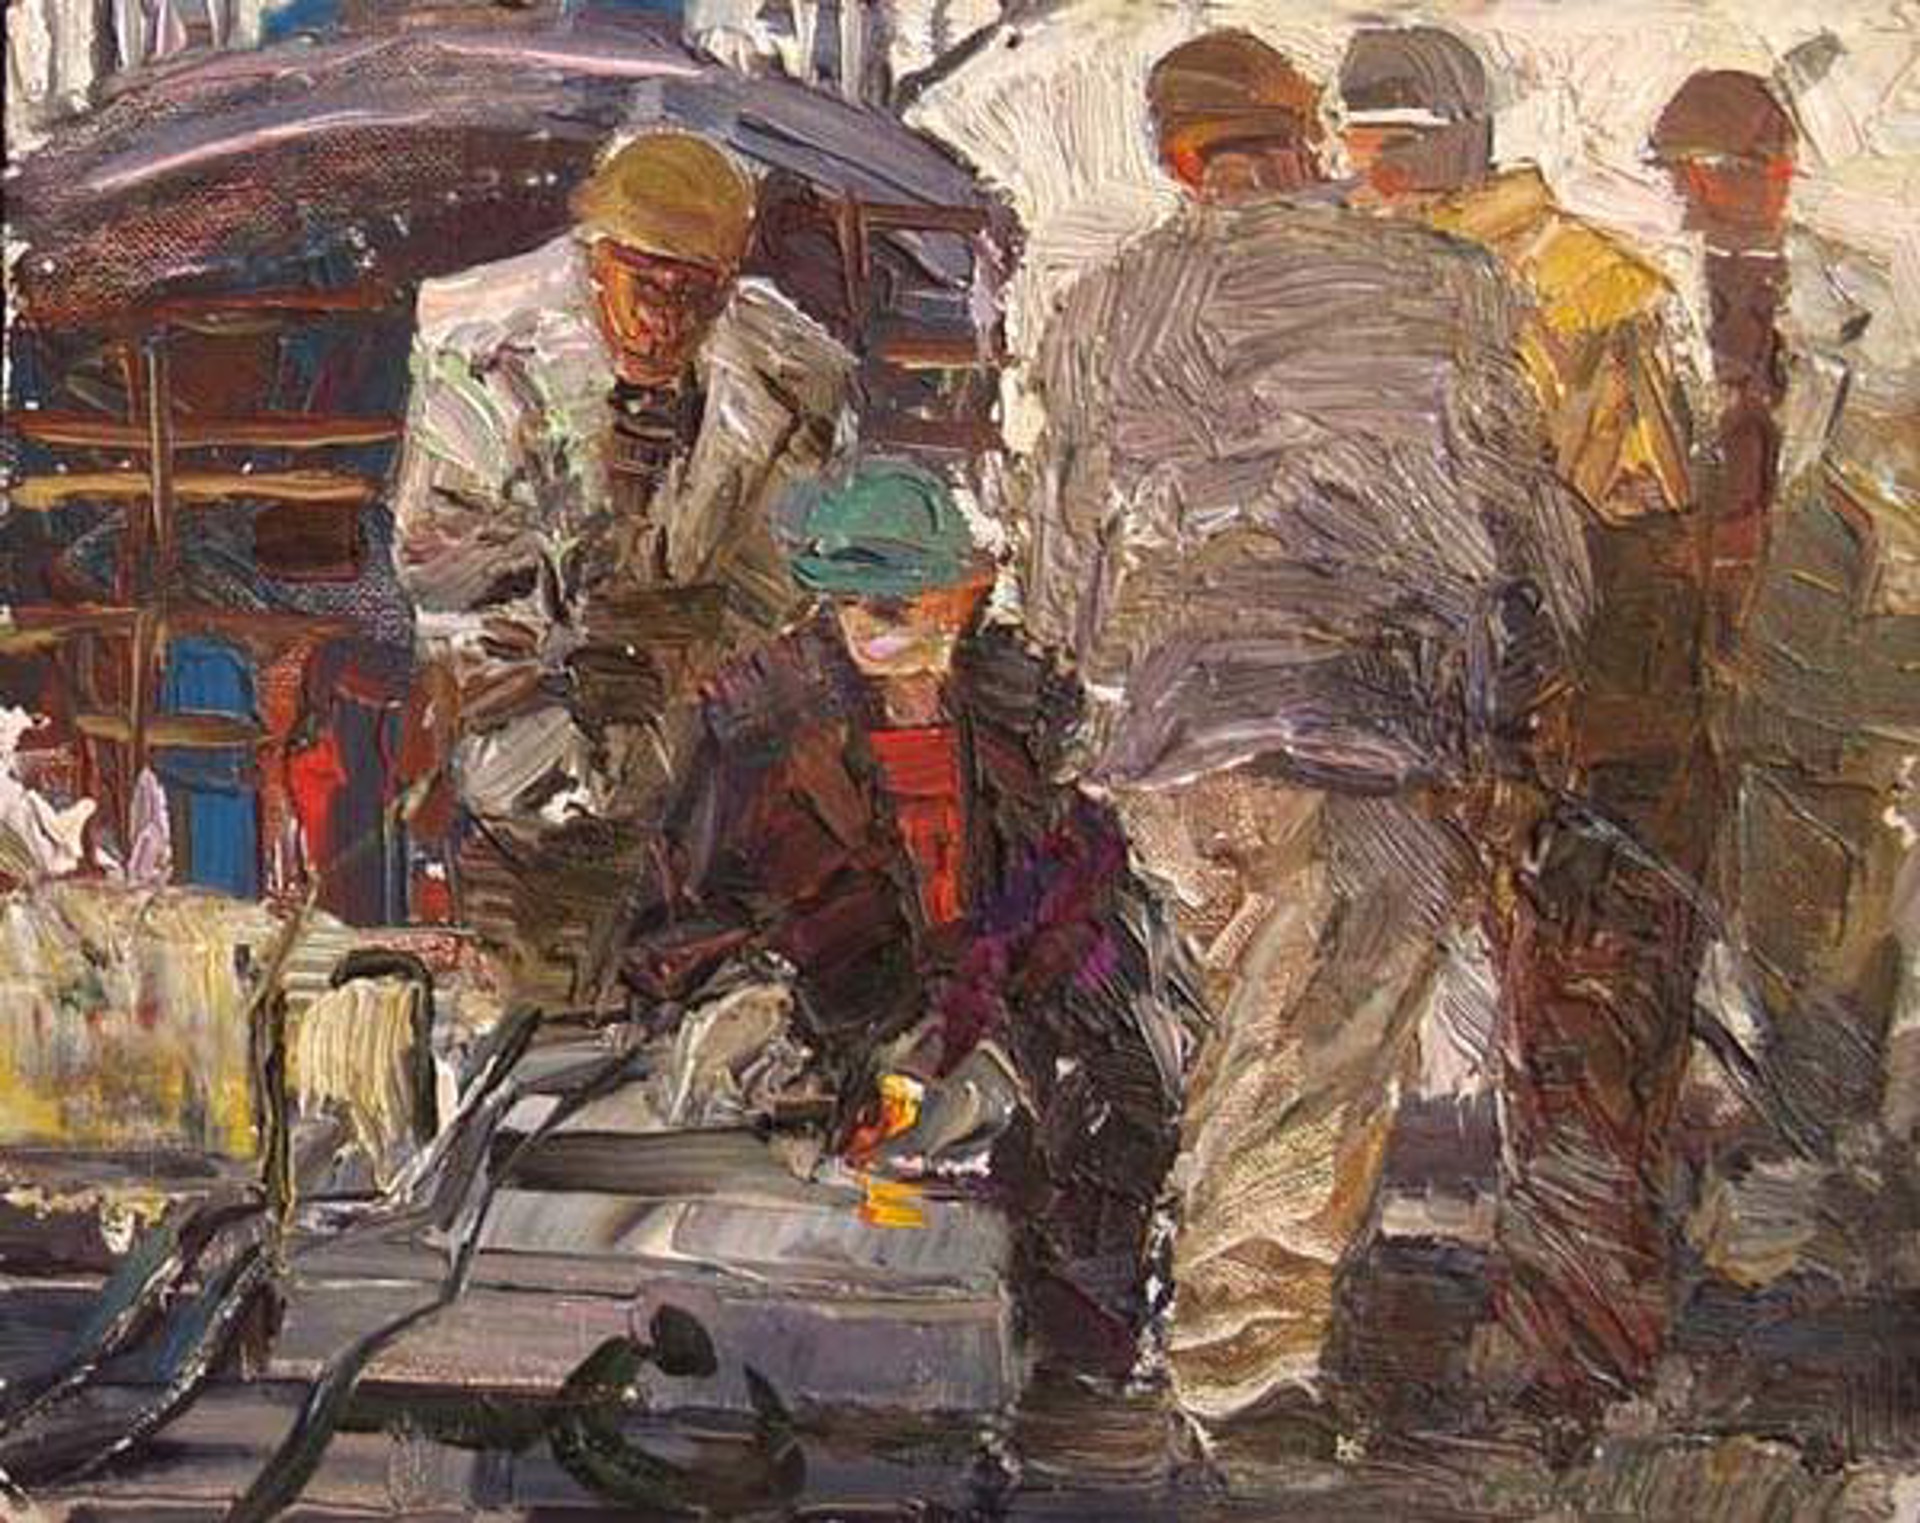 Dock Workers by Alexander Balabaev